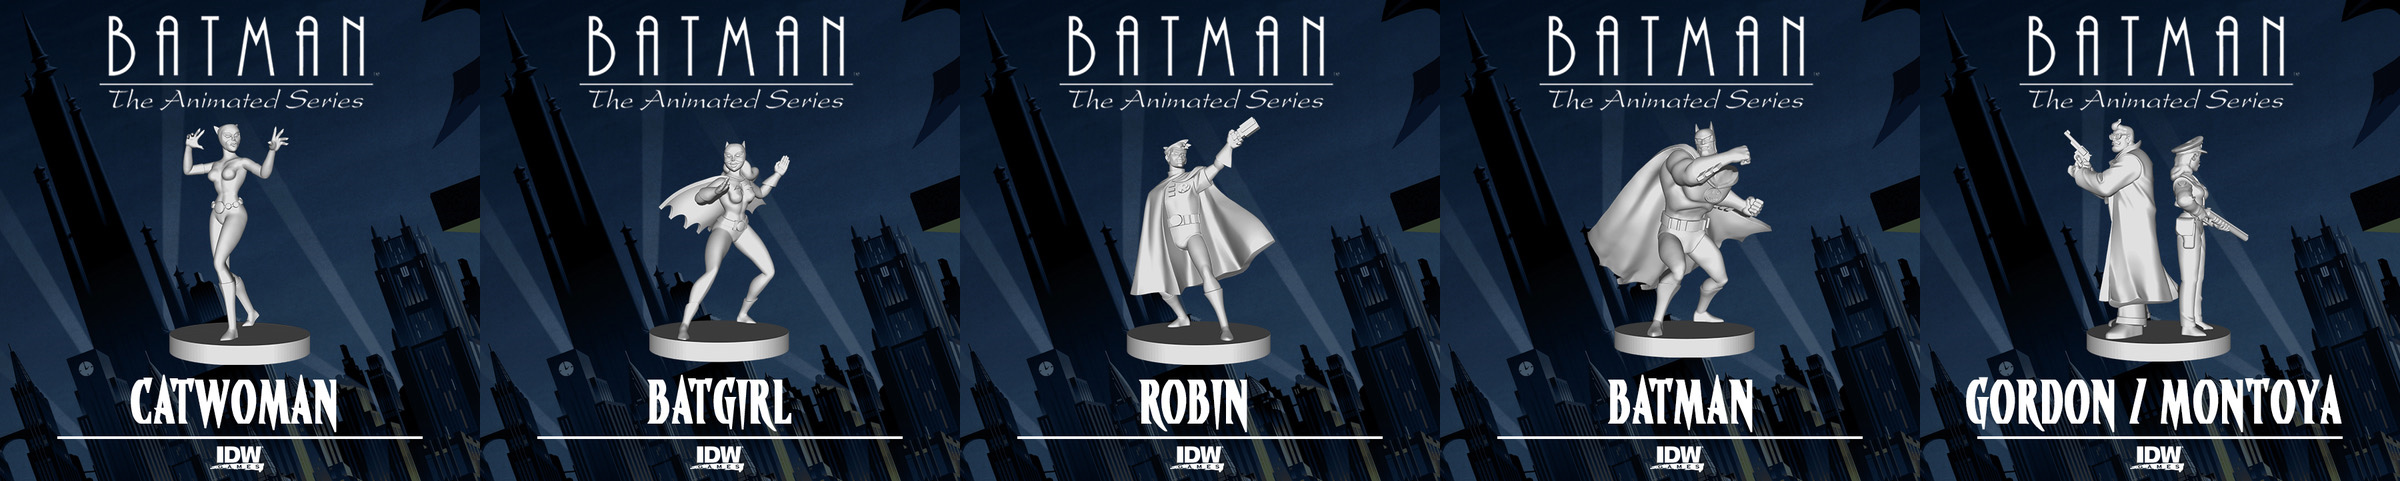 Batman Animated Series Gotham Under Siege